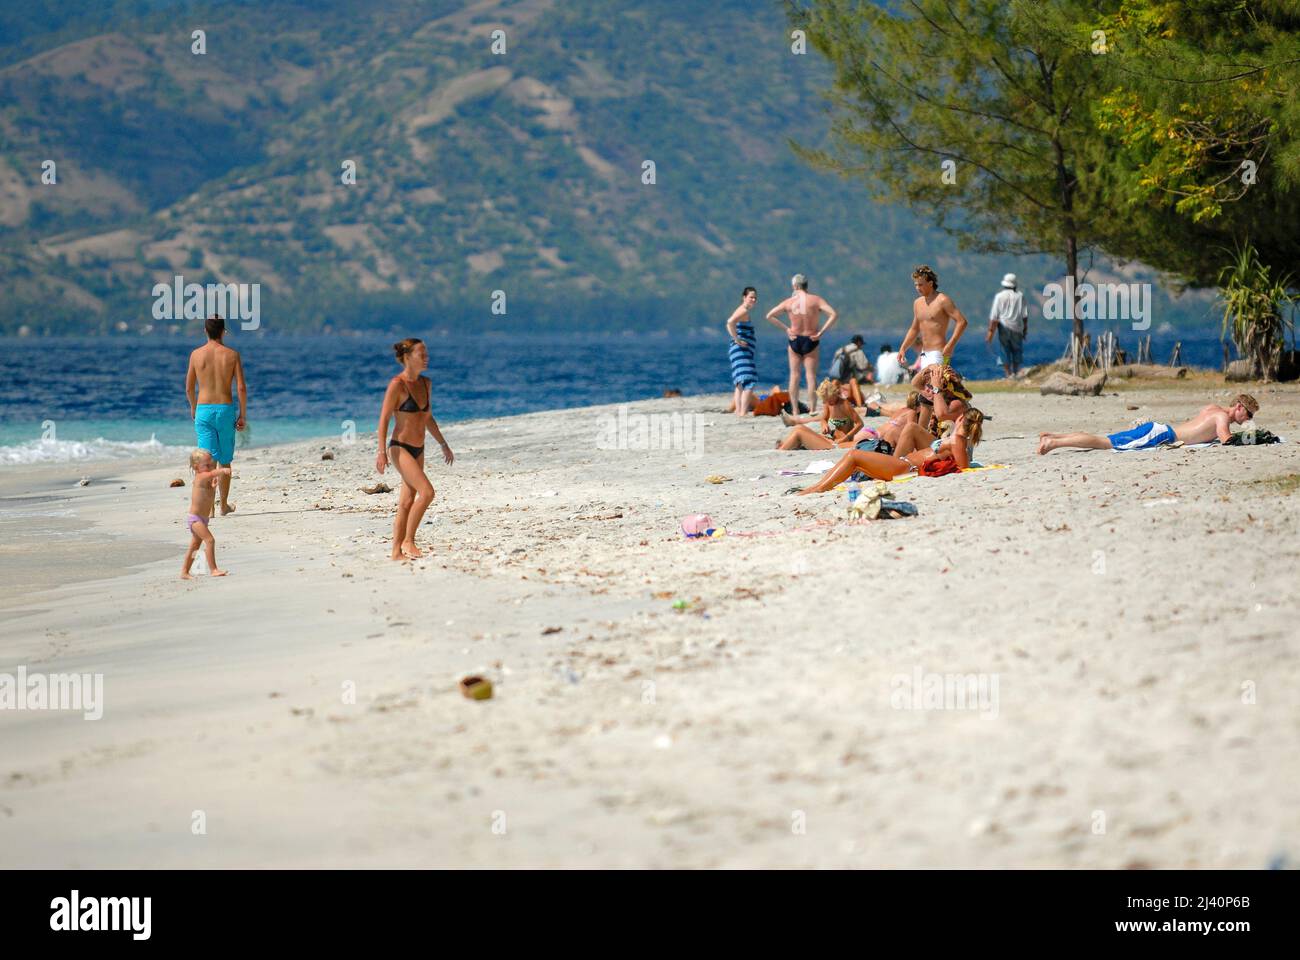 Los turistas nadan y se relajan en una de las playas de Gili Trawangan. Foto de stock